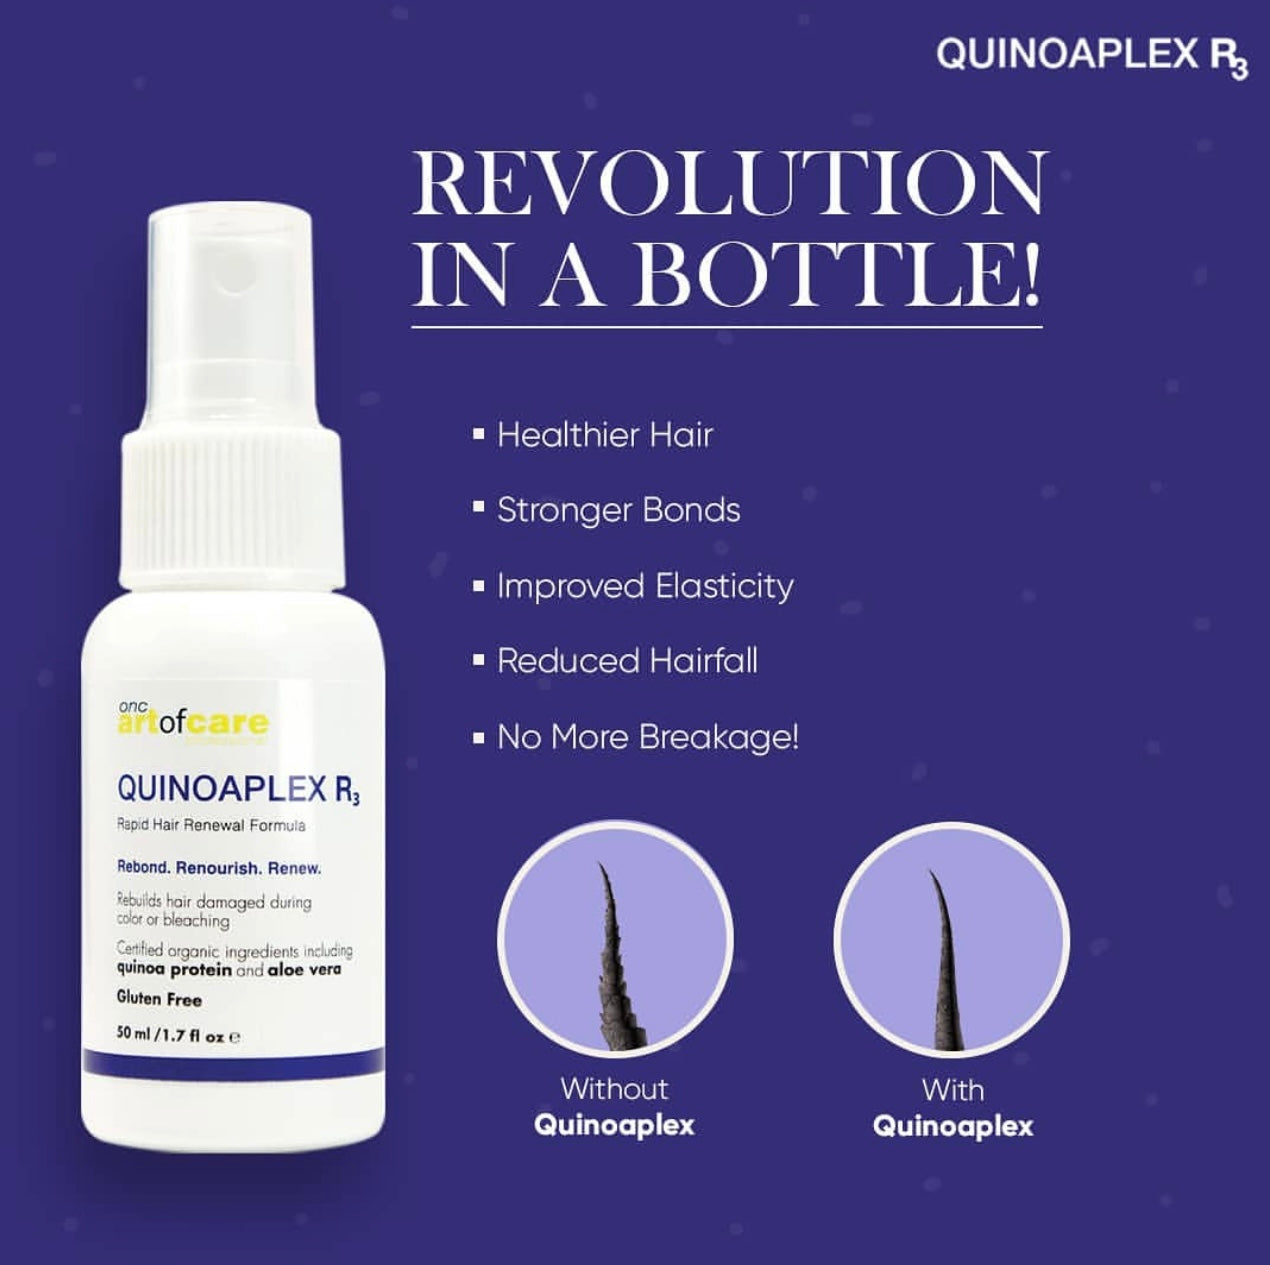 QUINOAPLEX R3 Rapid Hair Renewal Formula - Revolution in a Bottle!